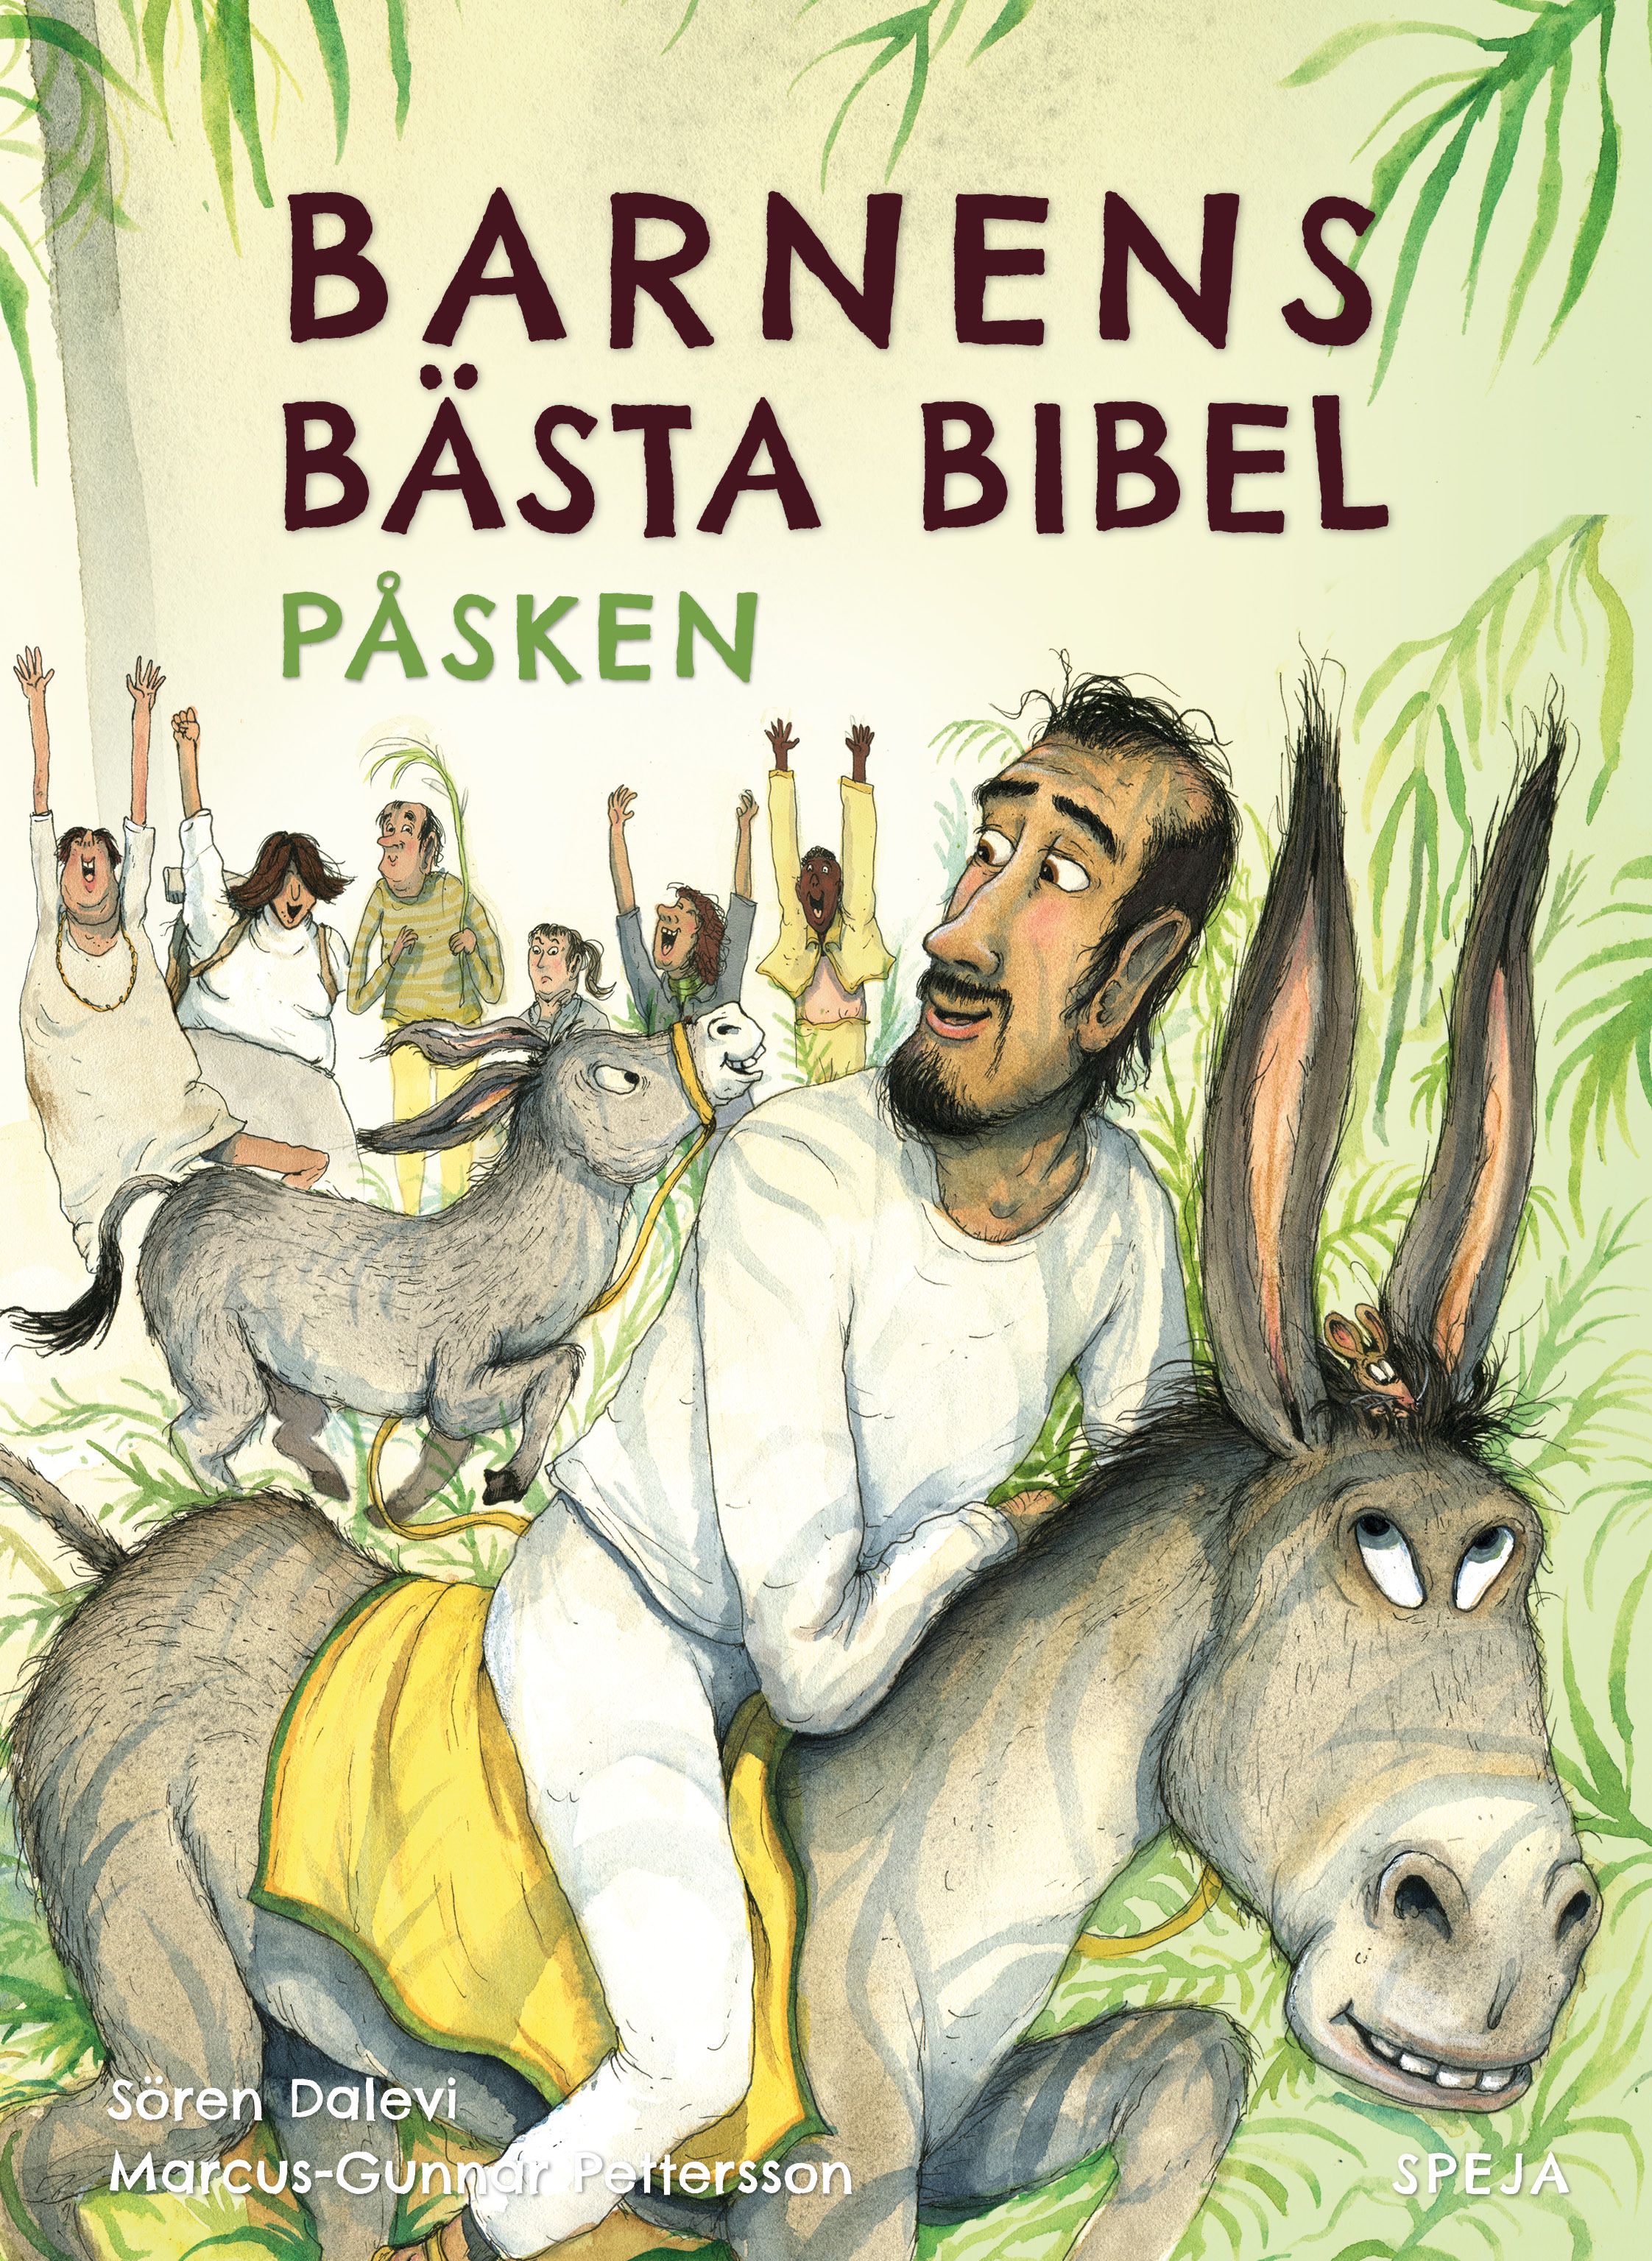 Barnens Bästa Bibel - Påsken, audiobook by Sören Dalevi